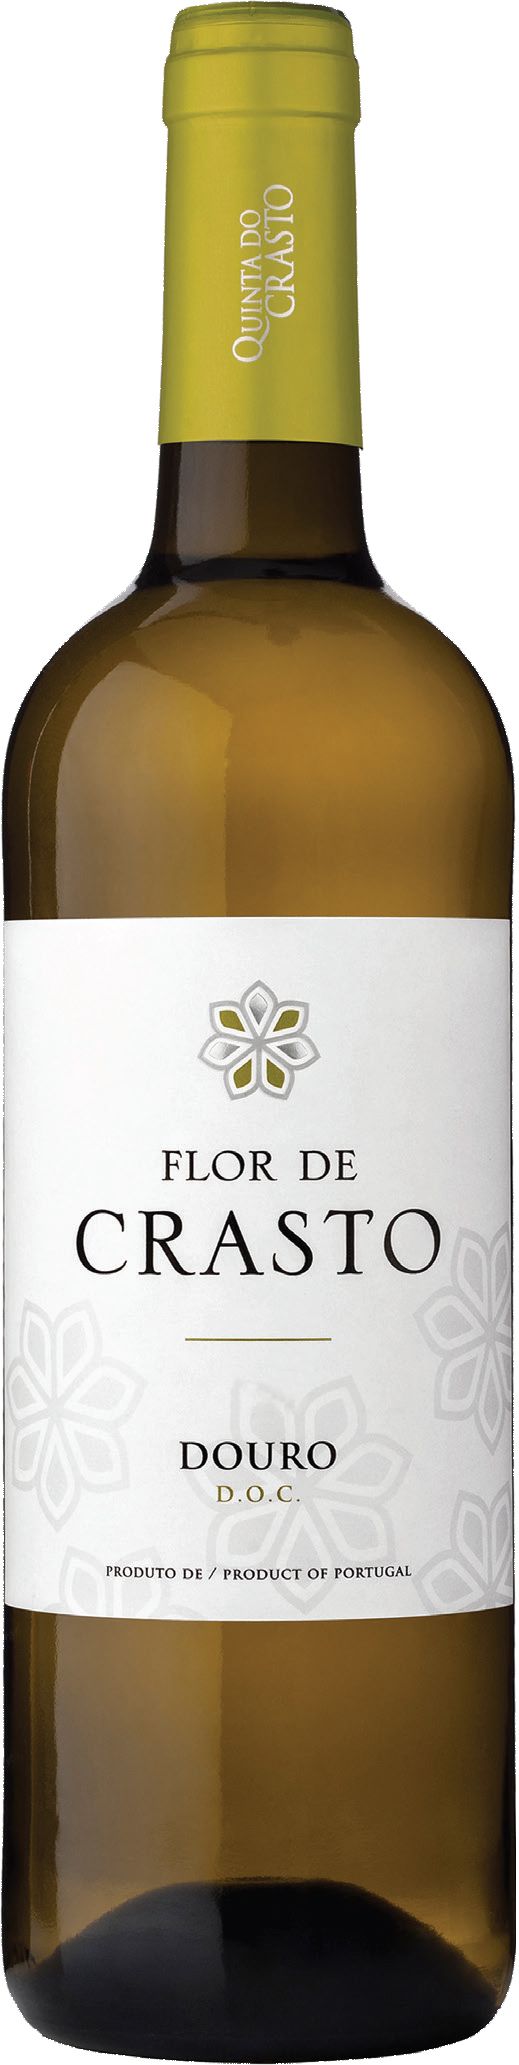 Quinta Do Crasto, Flor De Crasto Branco, 2018